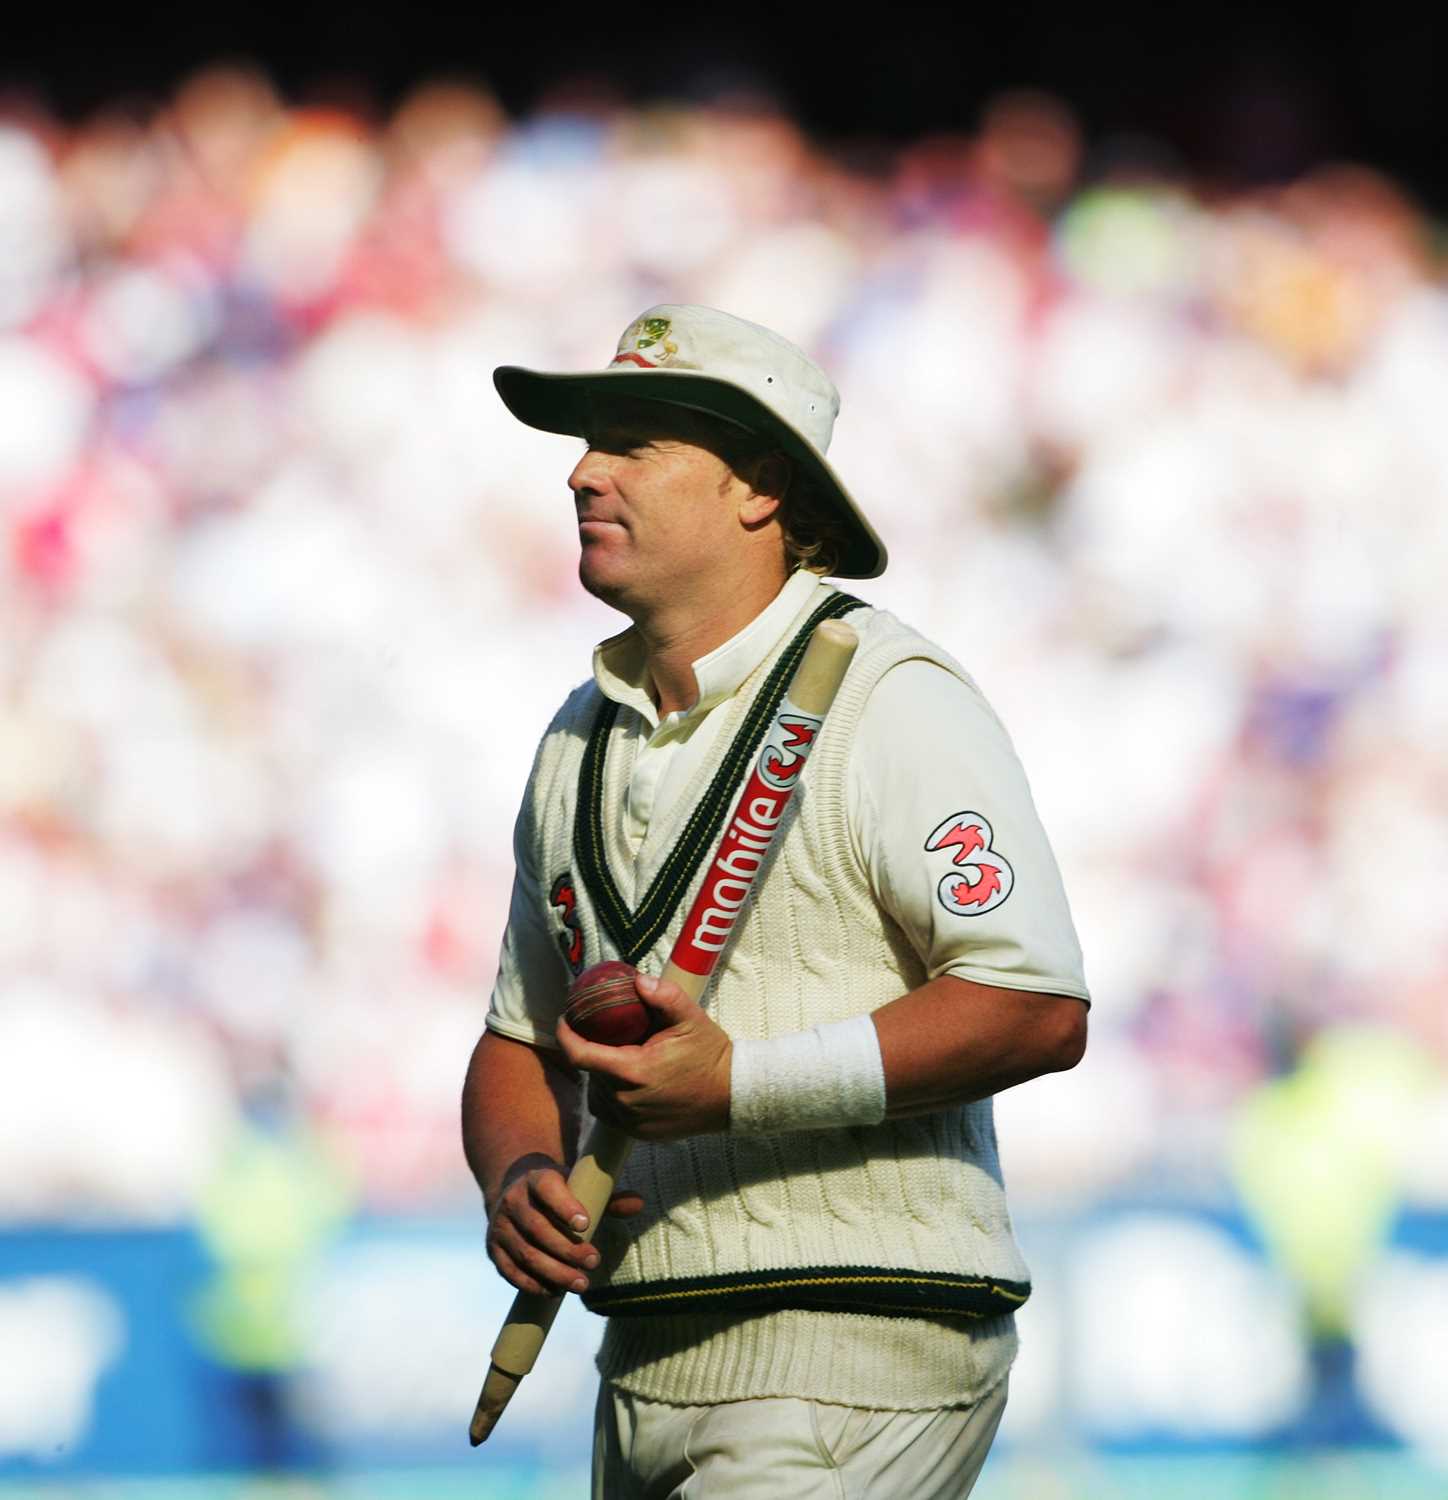 Shane Warne Iconic Australia Floppy White Cricket Hat Shane’s floppy white hat is an iconic piece of - Image 2 of 4